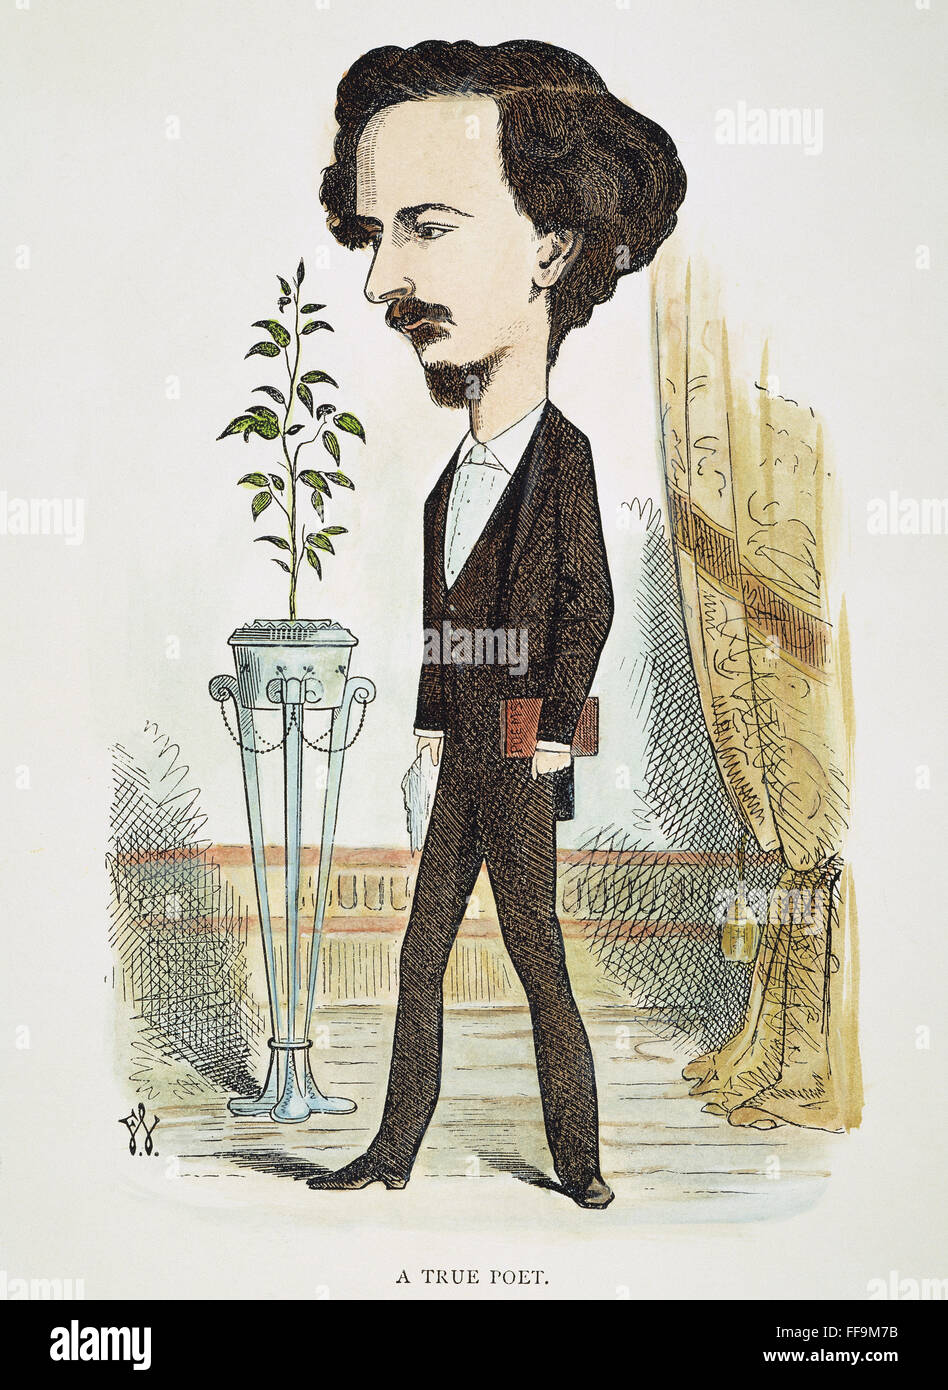 ALGERNON C. SWINBURNE /n(1837-1909). Englischer Dichter. Karikatur, 1872, durch Frederick Waddy. Stockfoto